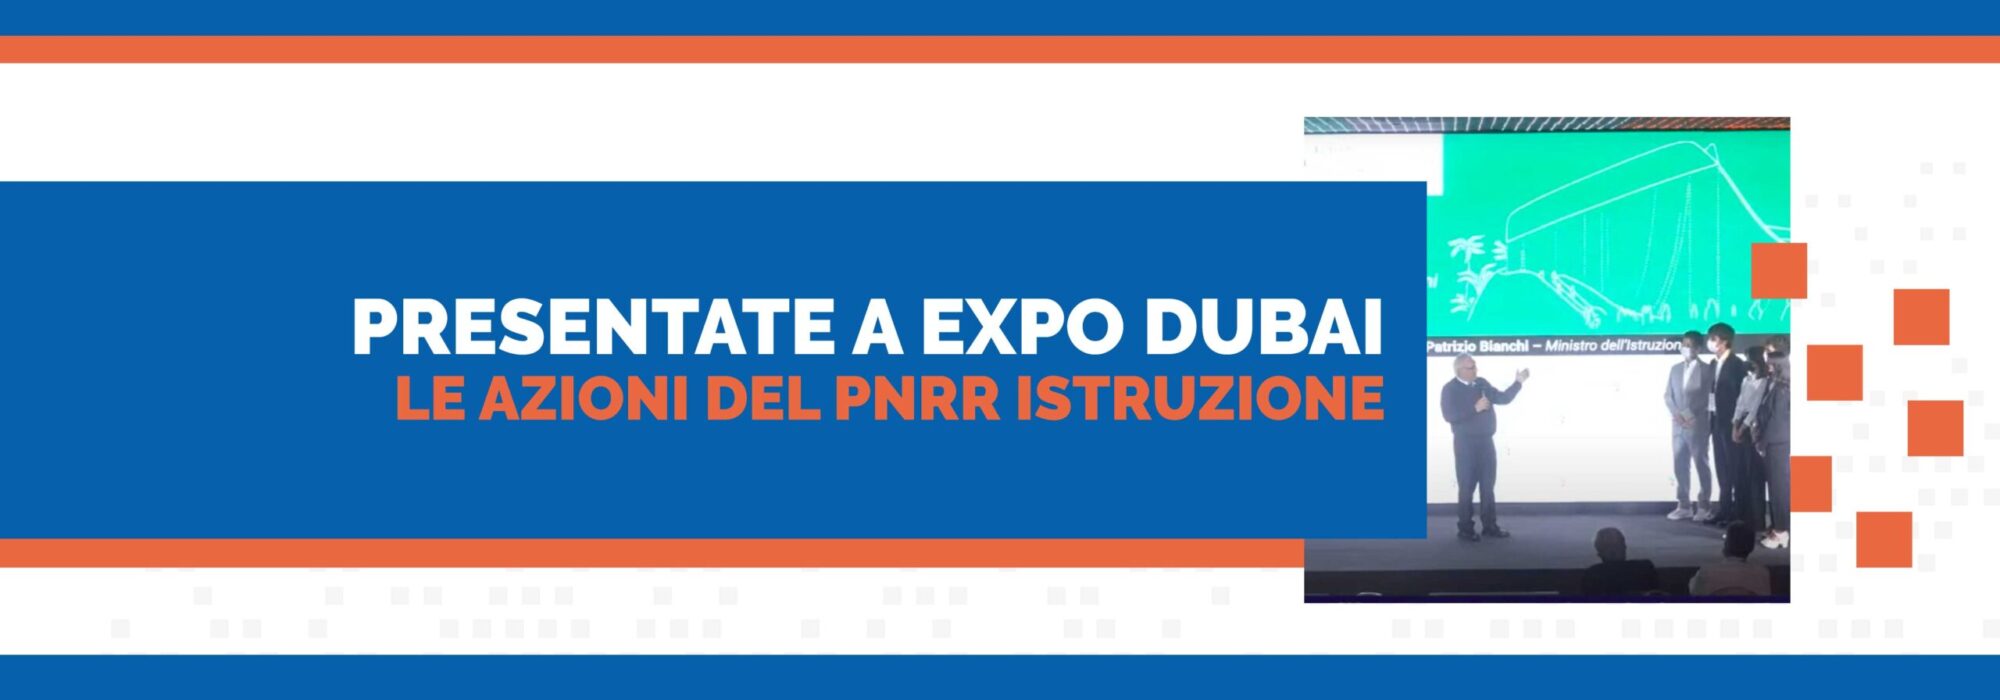 Expo Dubai le azioni del PNRR Istruzione